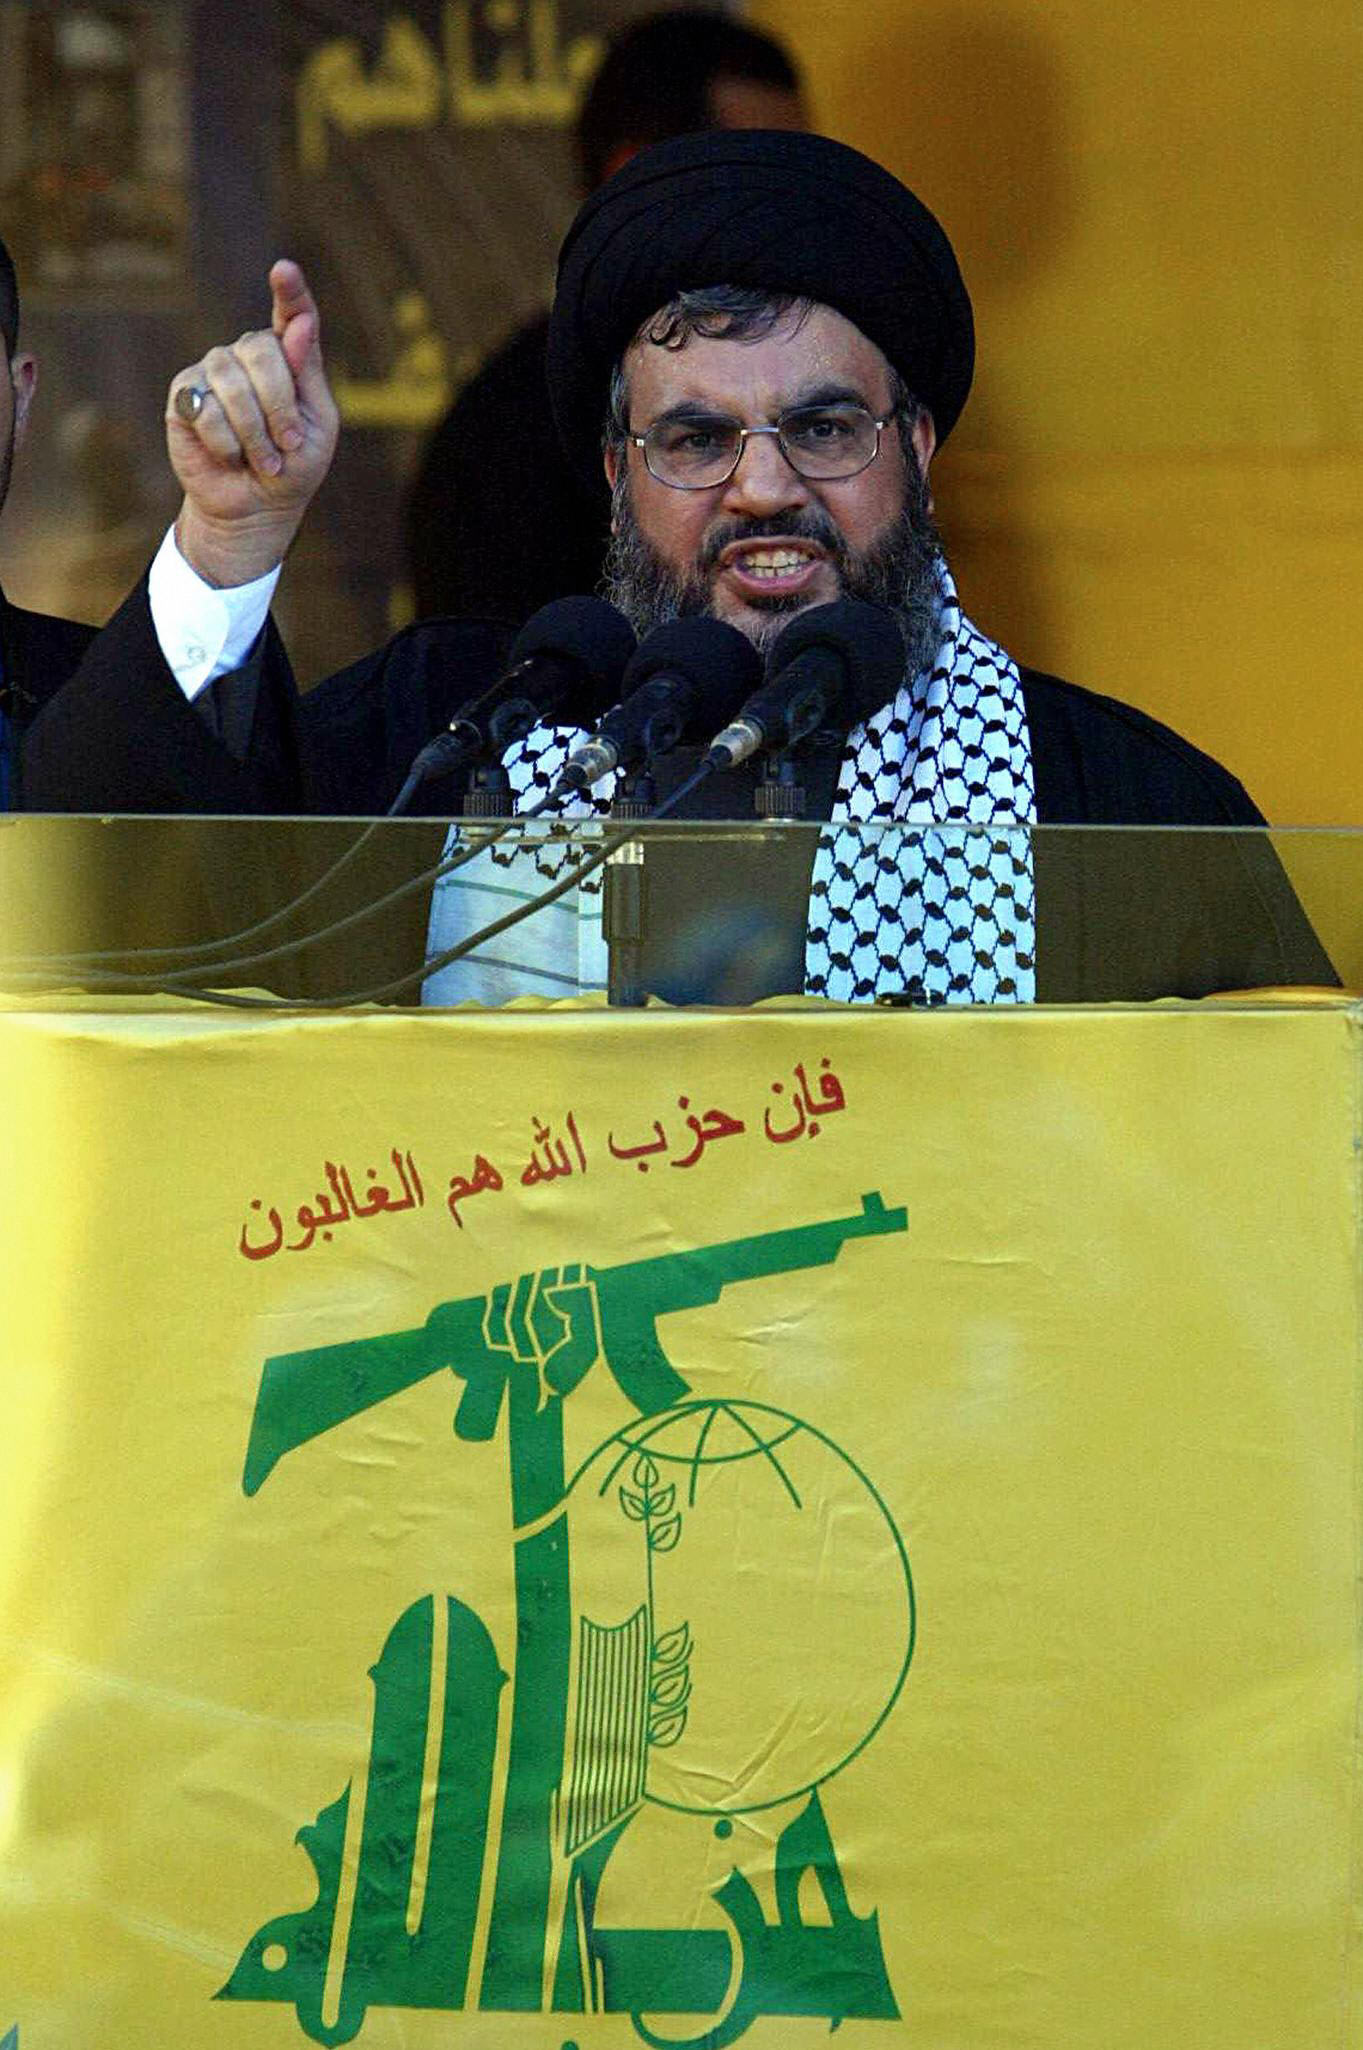 حزب الله: السياسات السعودية هي المسؤولة عن انتشار تنظيم "داعش" الإرهابي